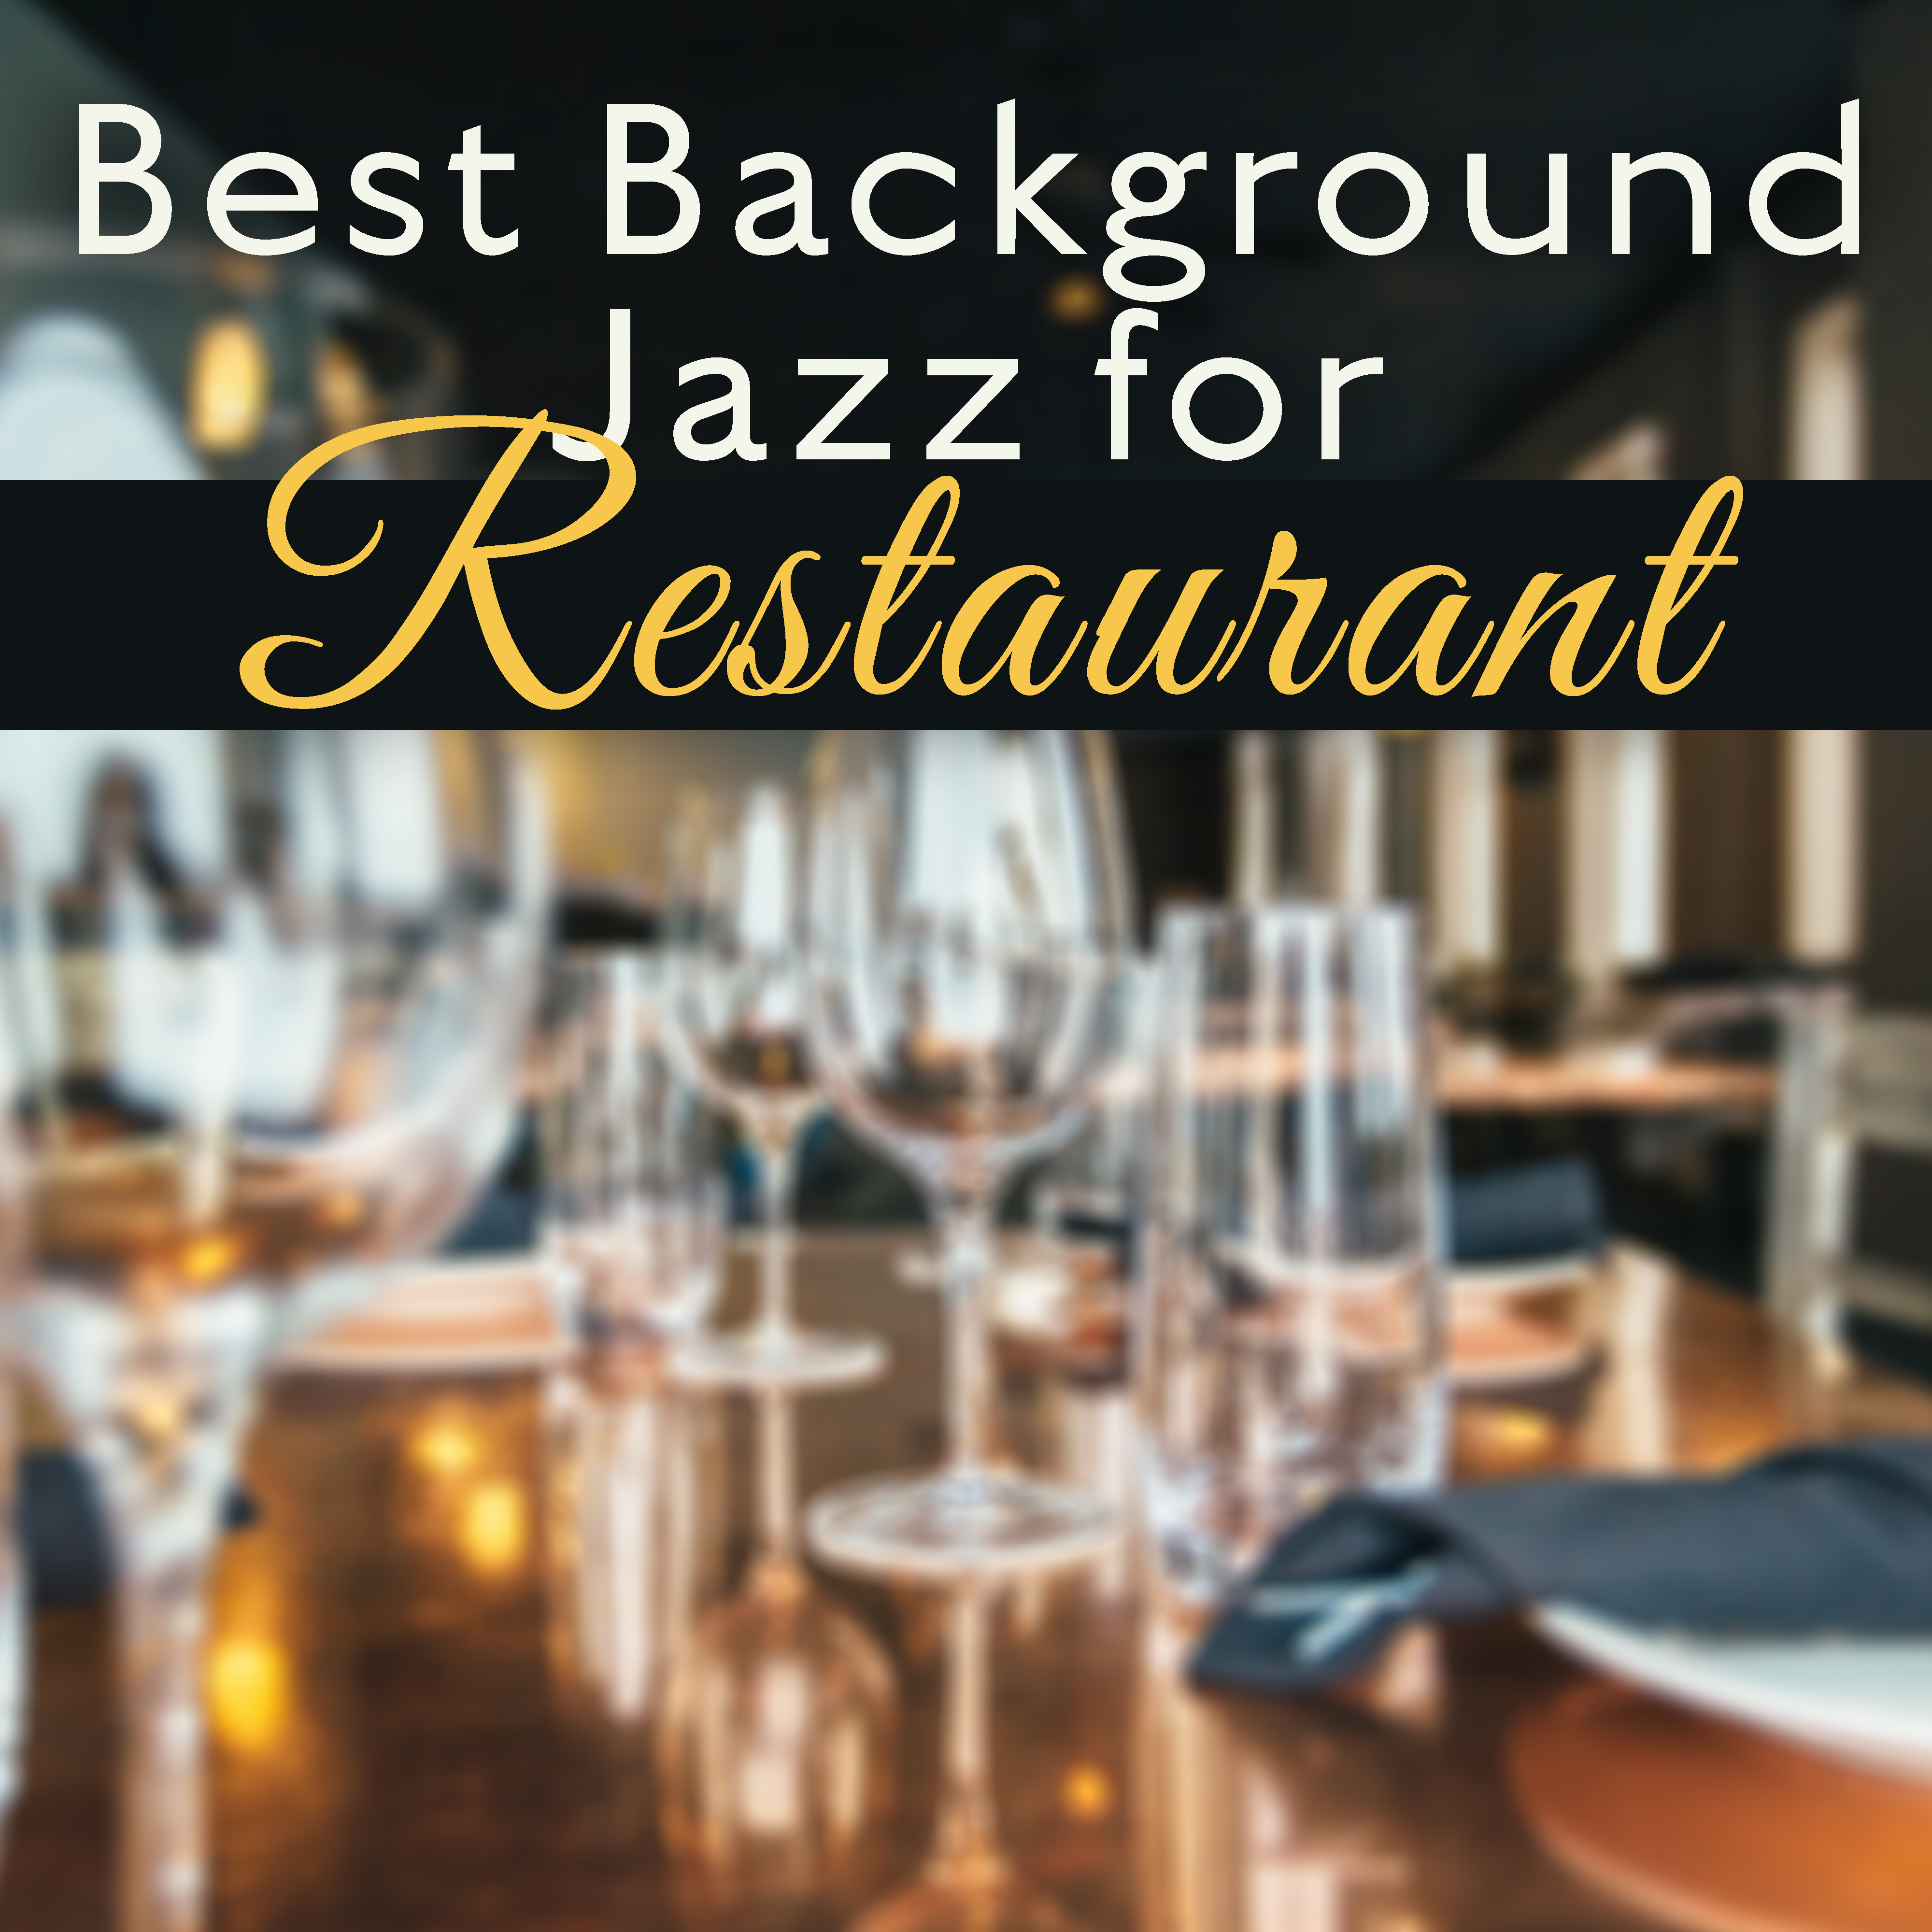 Best Background Jazz for Restaurant  Calm Jazz Music, Stress Relief, Peaceful Background Music, Cafe Restaurant Jazz